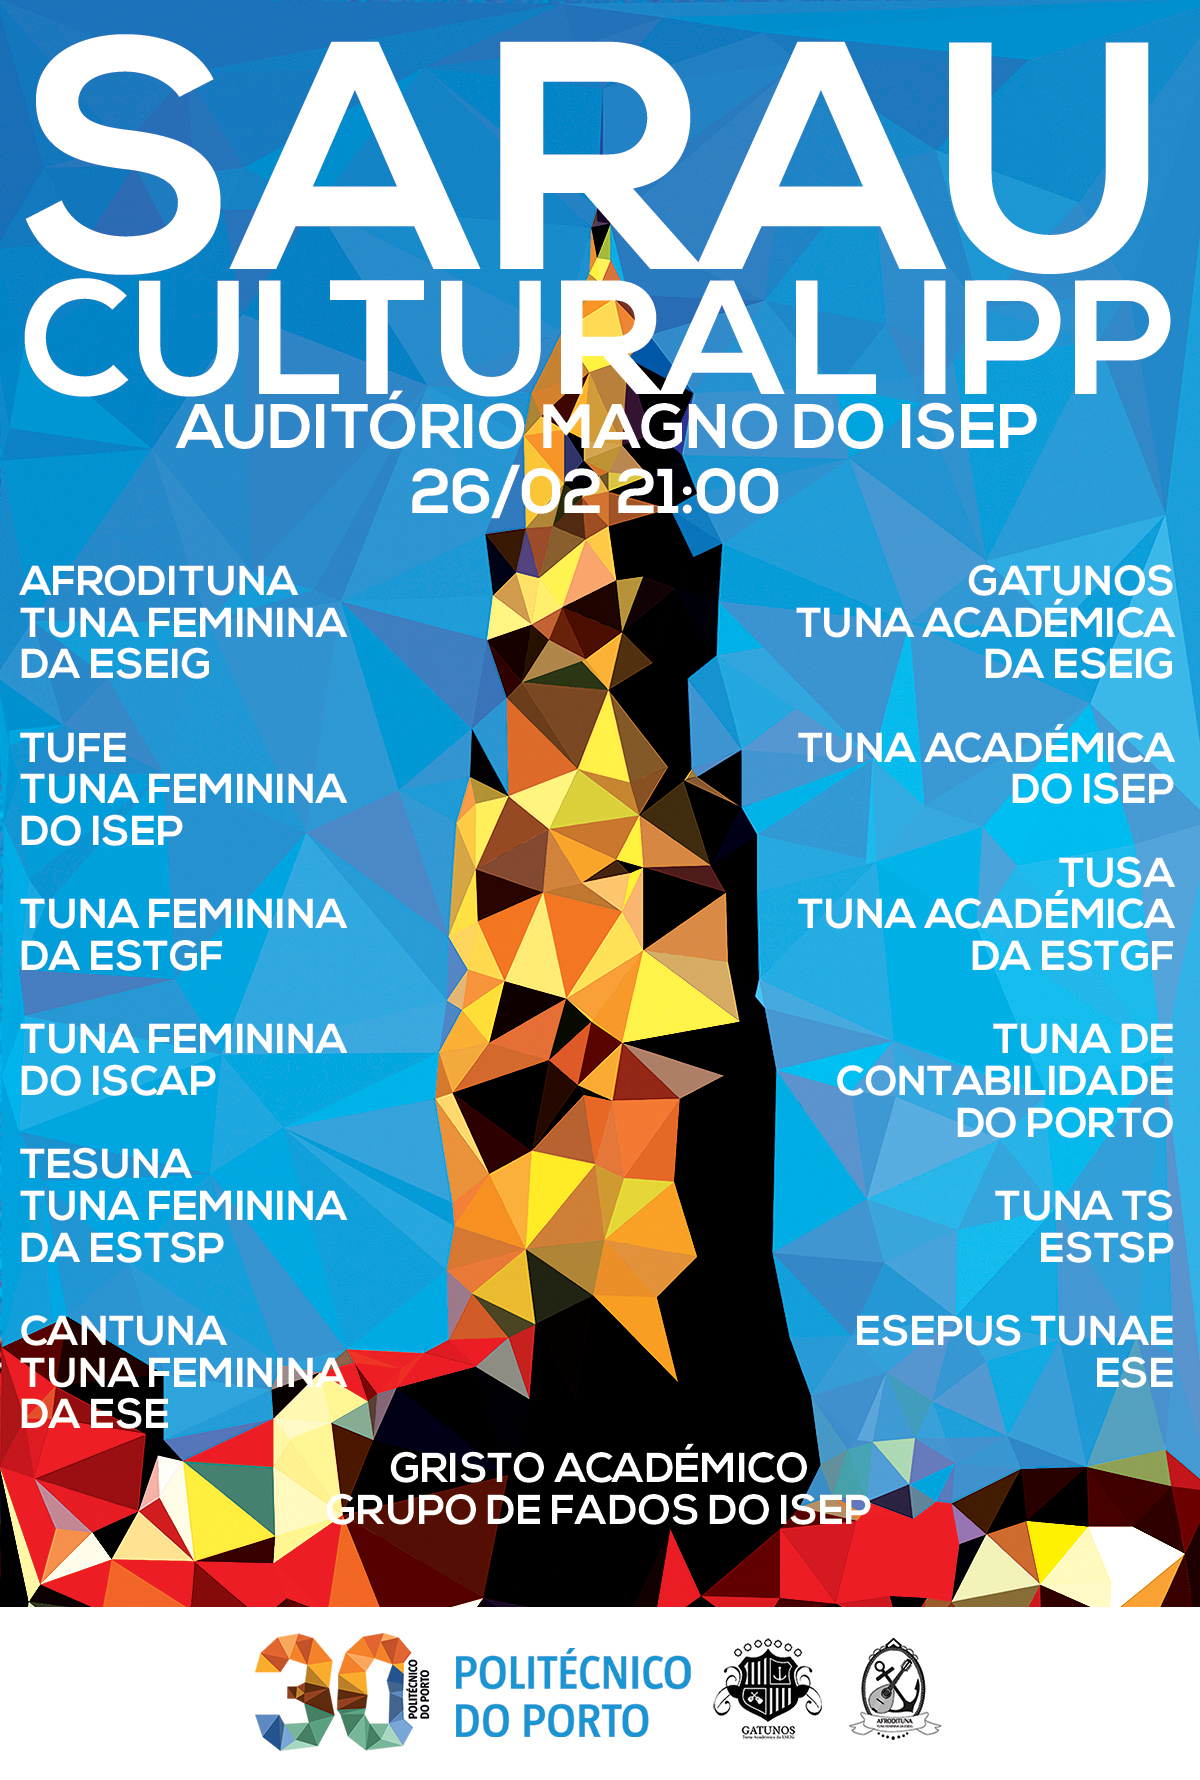 IPP sarau cultural politecnico porto Tunas musica artes tradição 30 anos